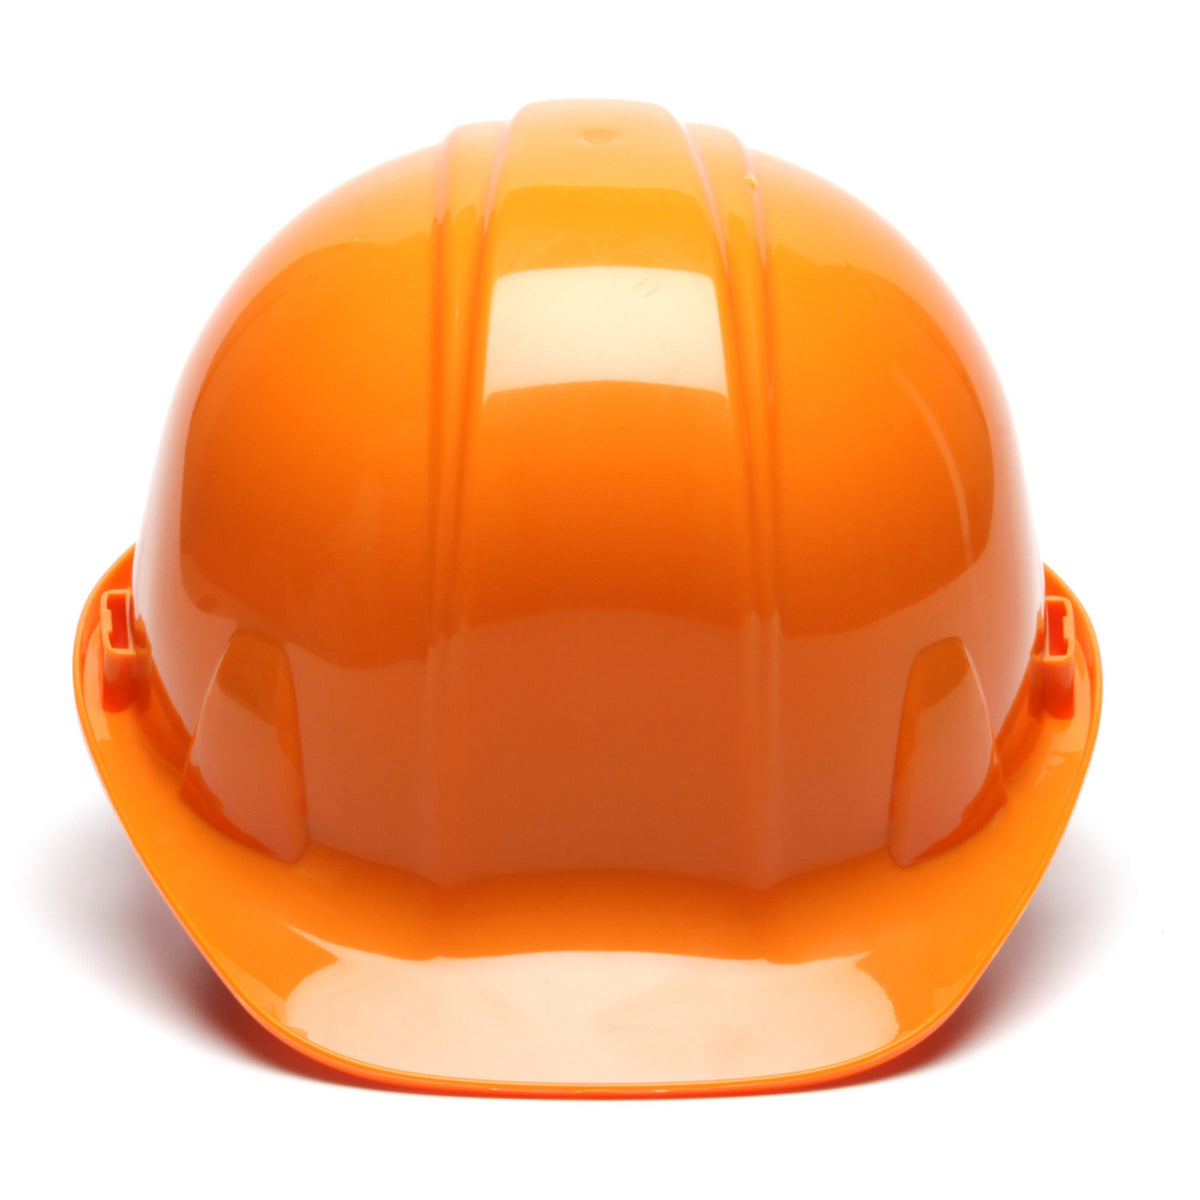 Pyramex SL Series Hard Hat_Orange - Work World - Workwear, Work Boots, Safety Gear